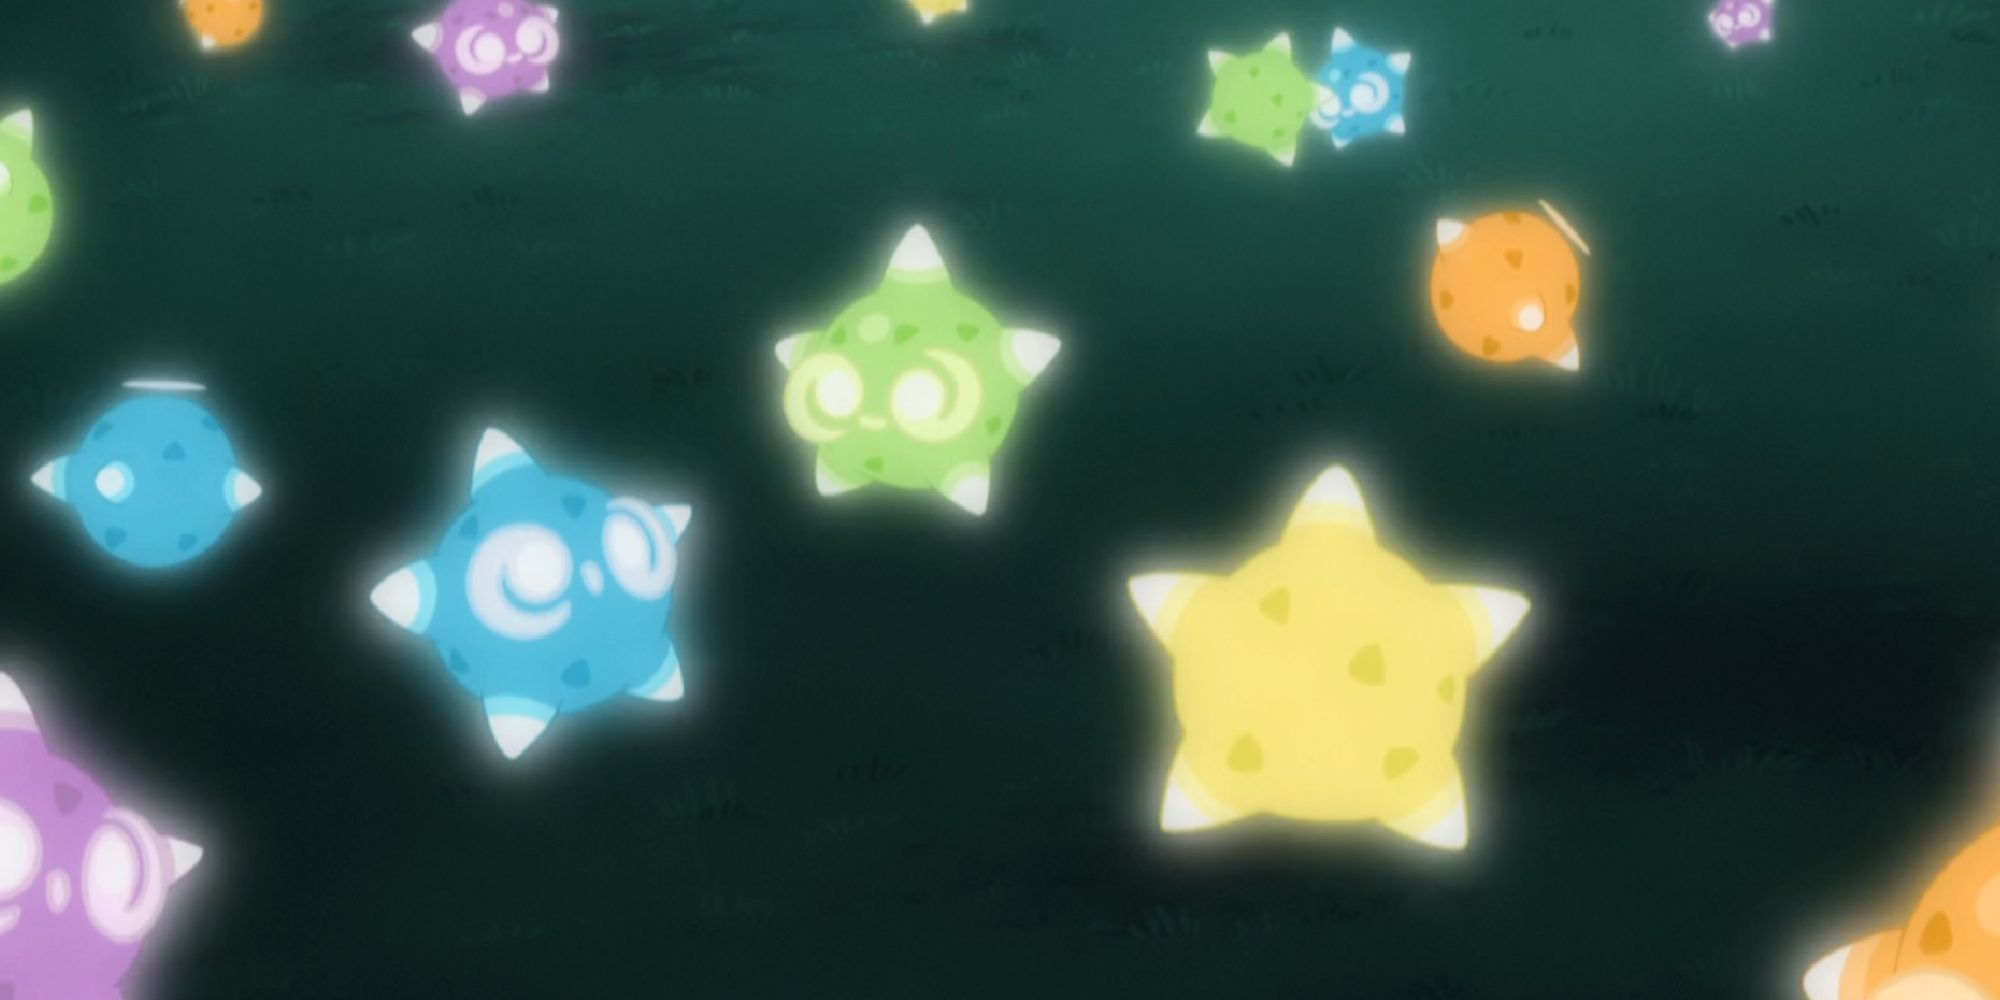 Группа второстепенных ядер разных цветов из аниме.